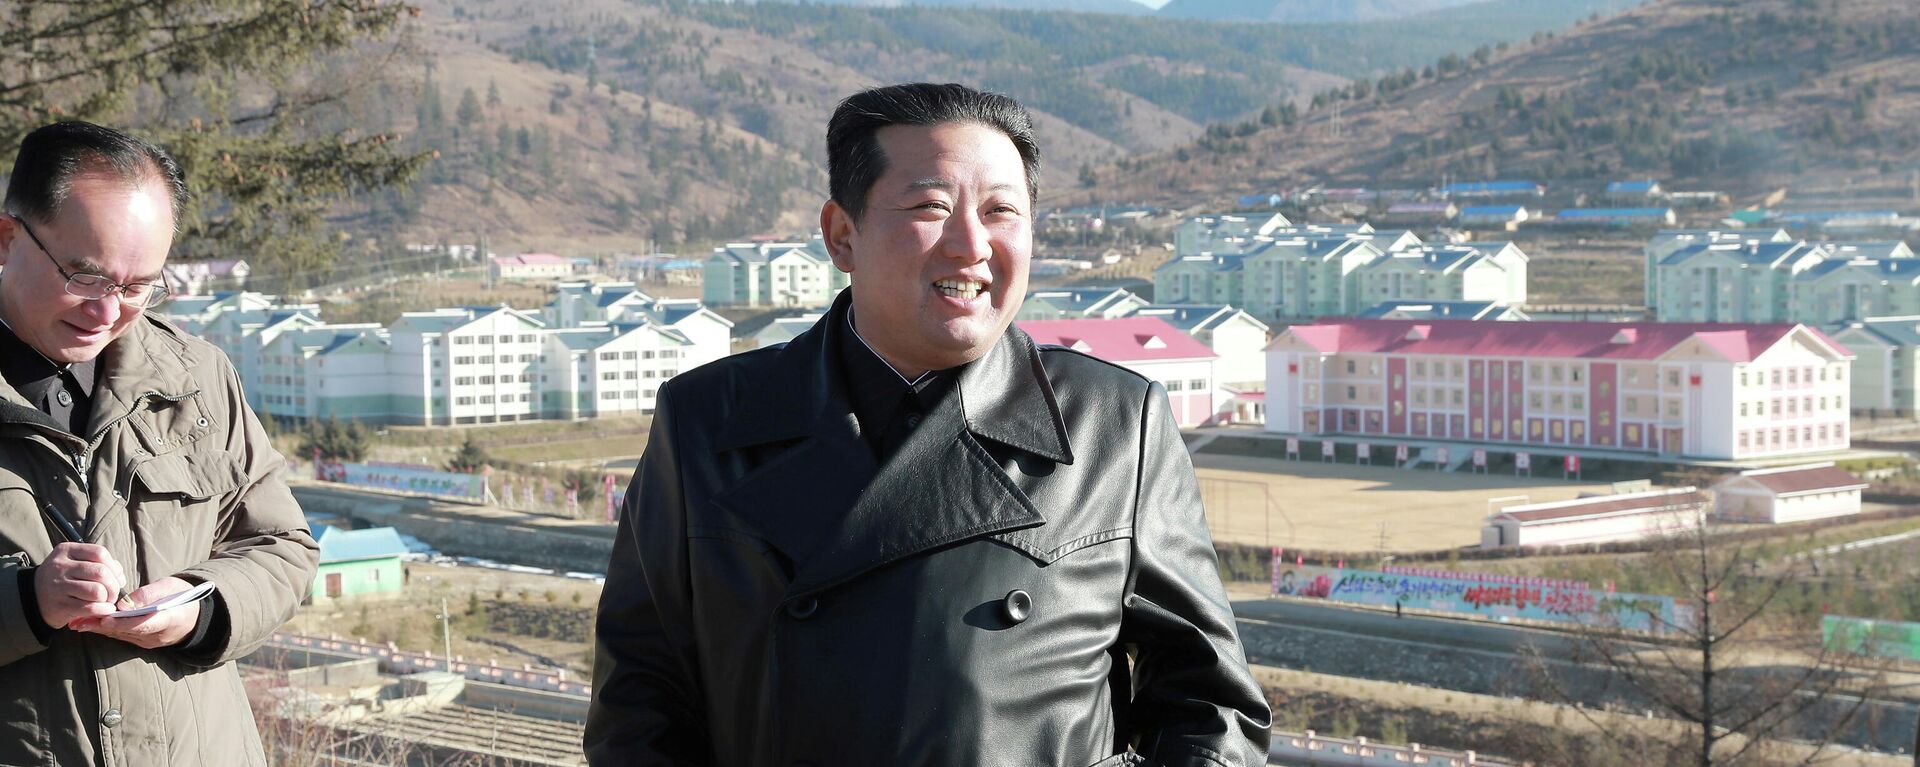 El líder norcoreano Kim Jong-un - Sputnik Mundo, 1920, 17.11.2021